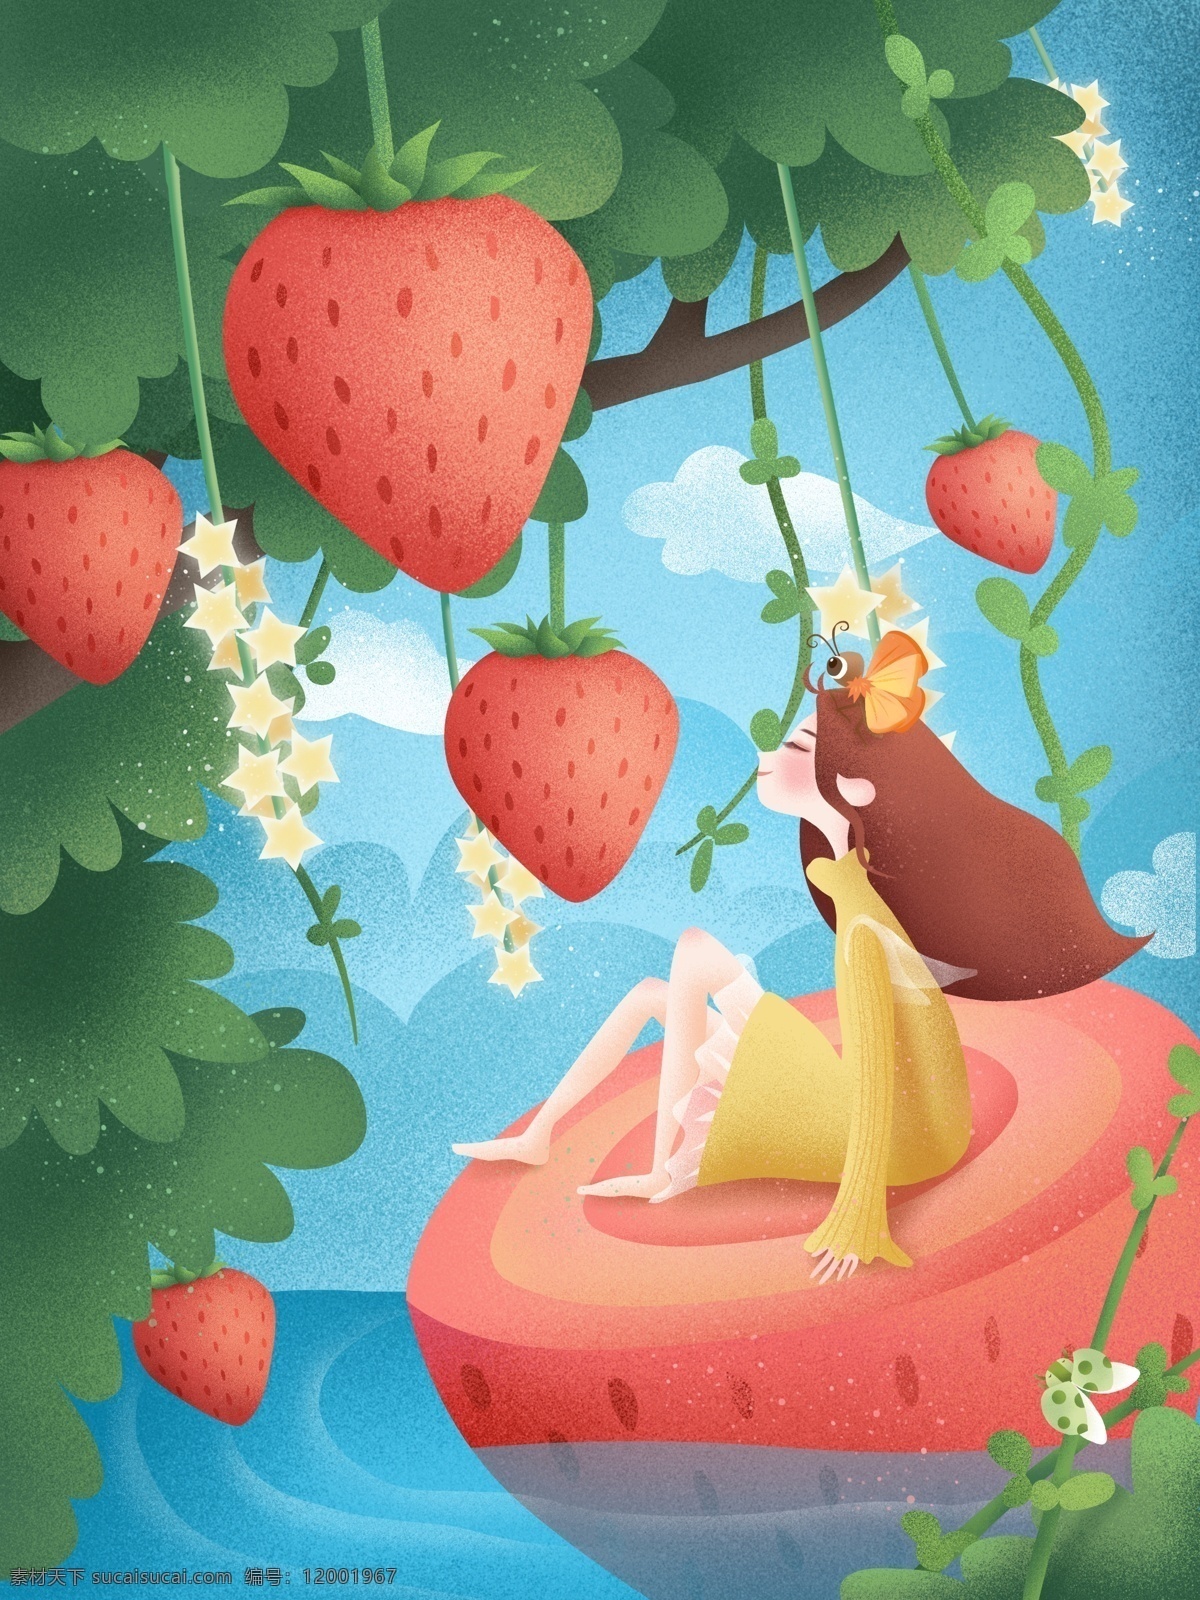 原创 手绘 插画 创意 水果 草莓 清新 女孩 植物 手绘插画 树